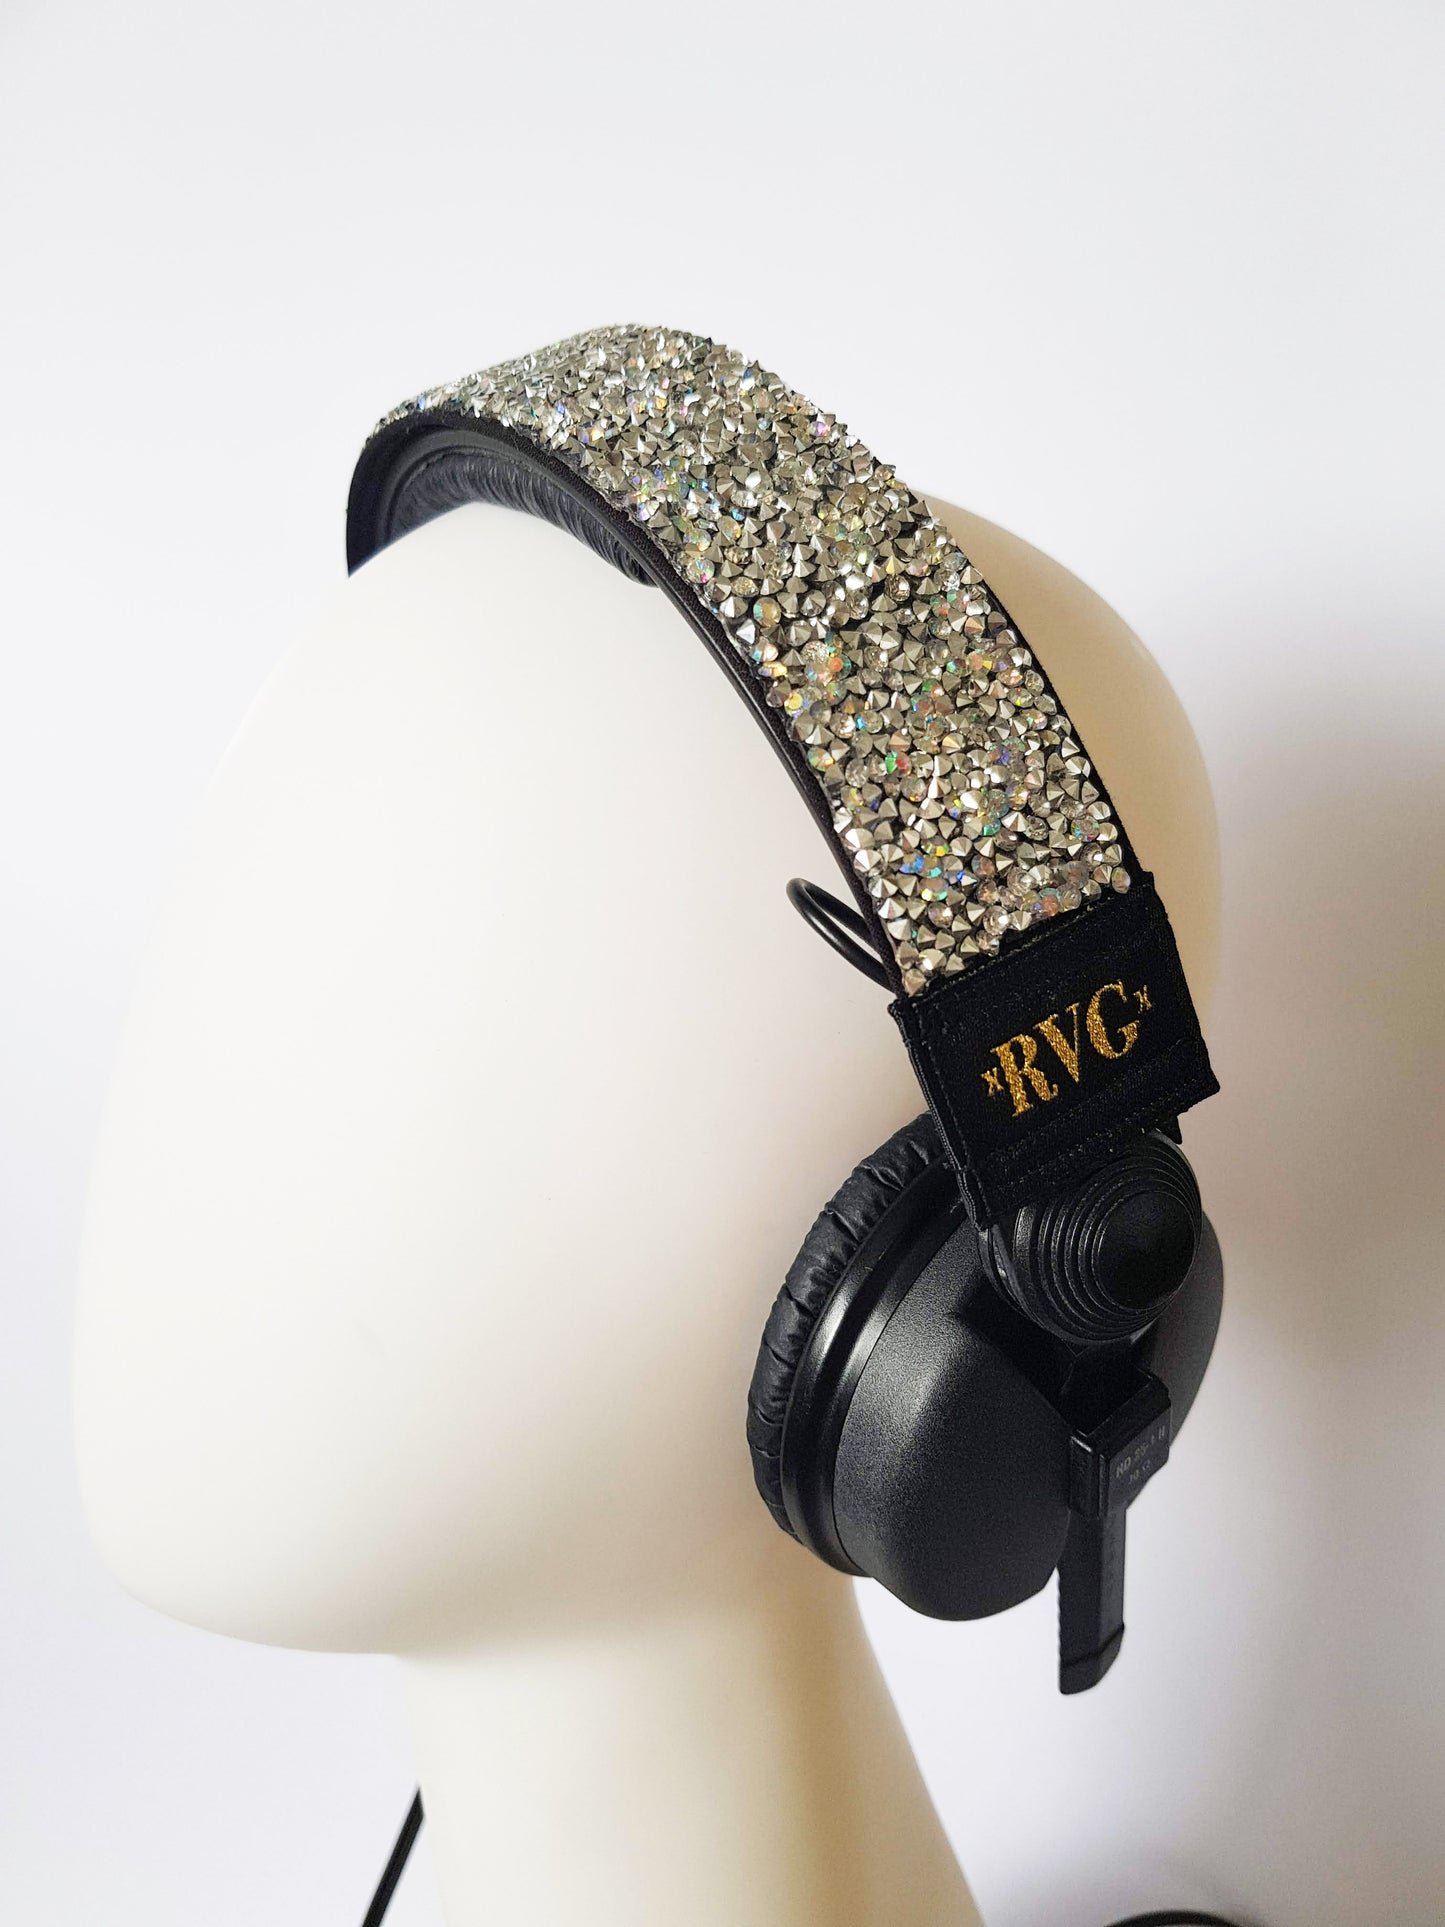 Marilyn Headphone Crown